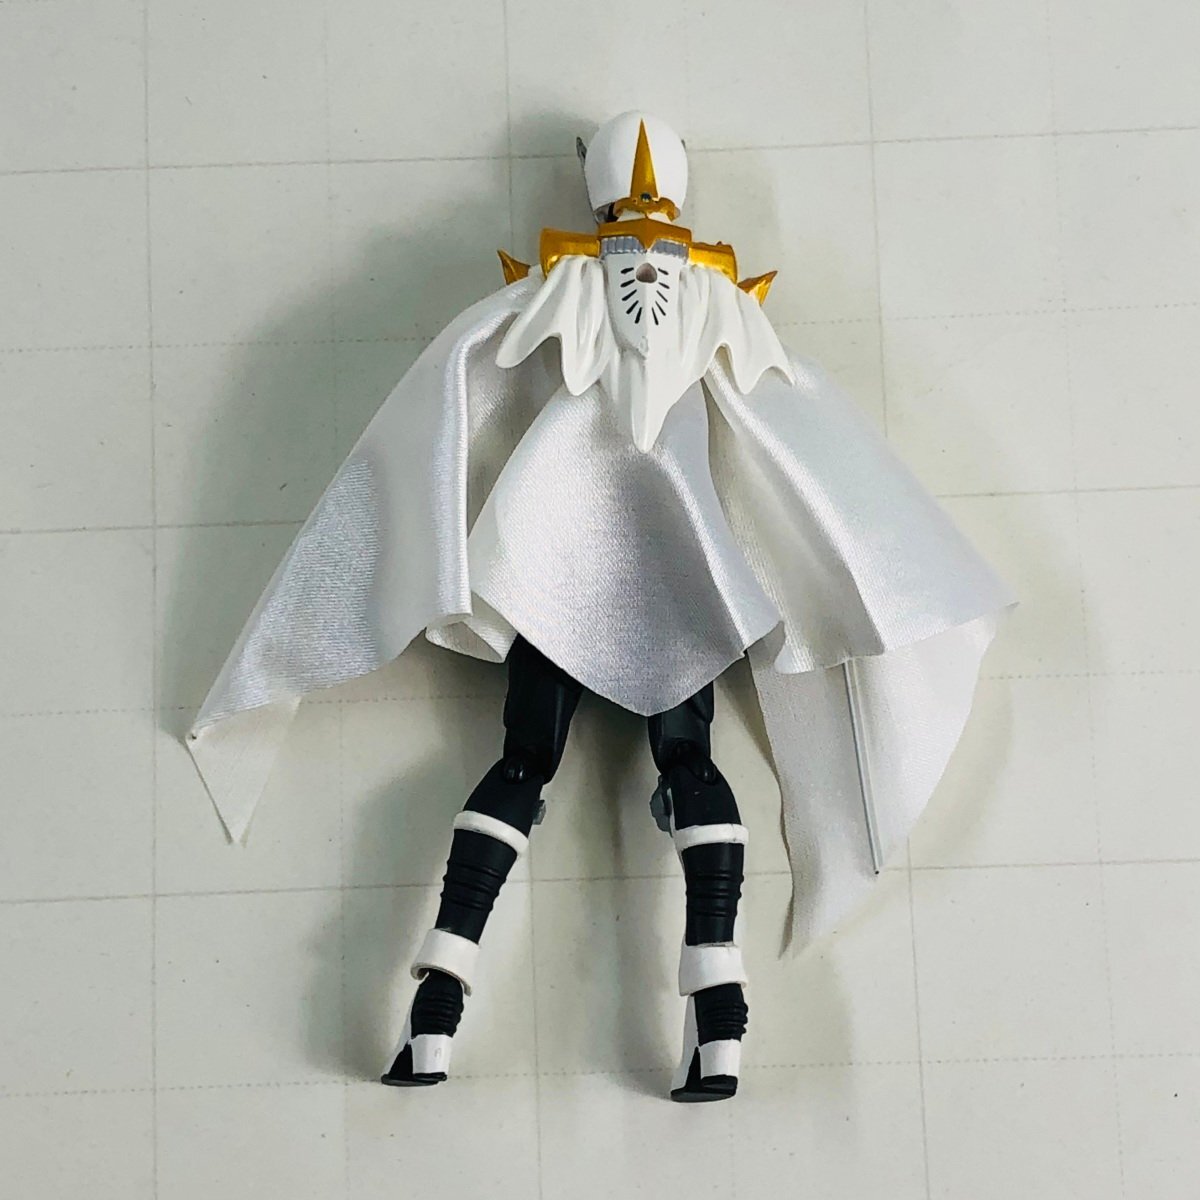 中古品 マックスファクトリー figma SP-026 仮面ライダードラゴンナイト 仮面ライダーセイレーンの画像3